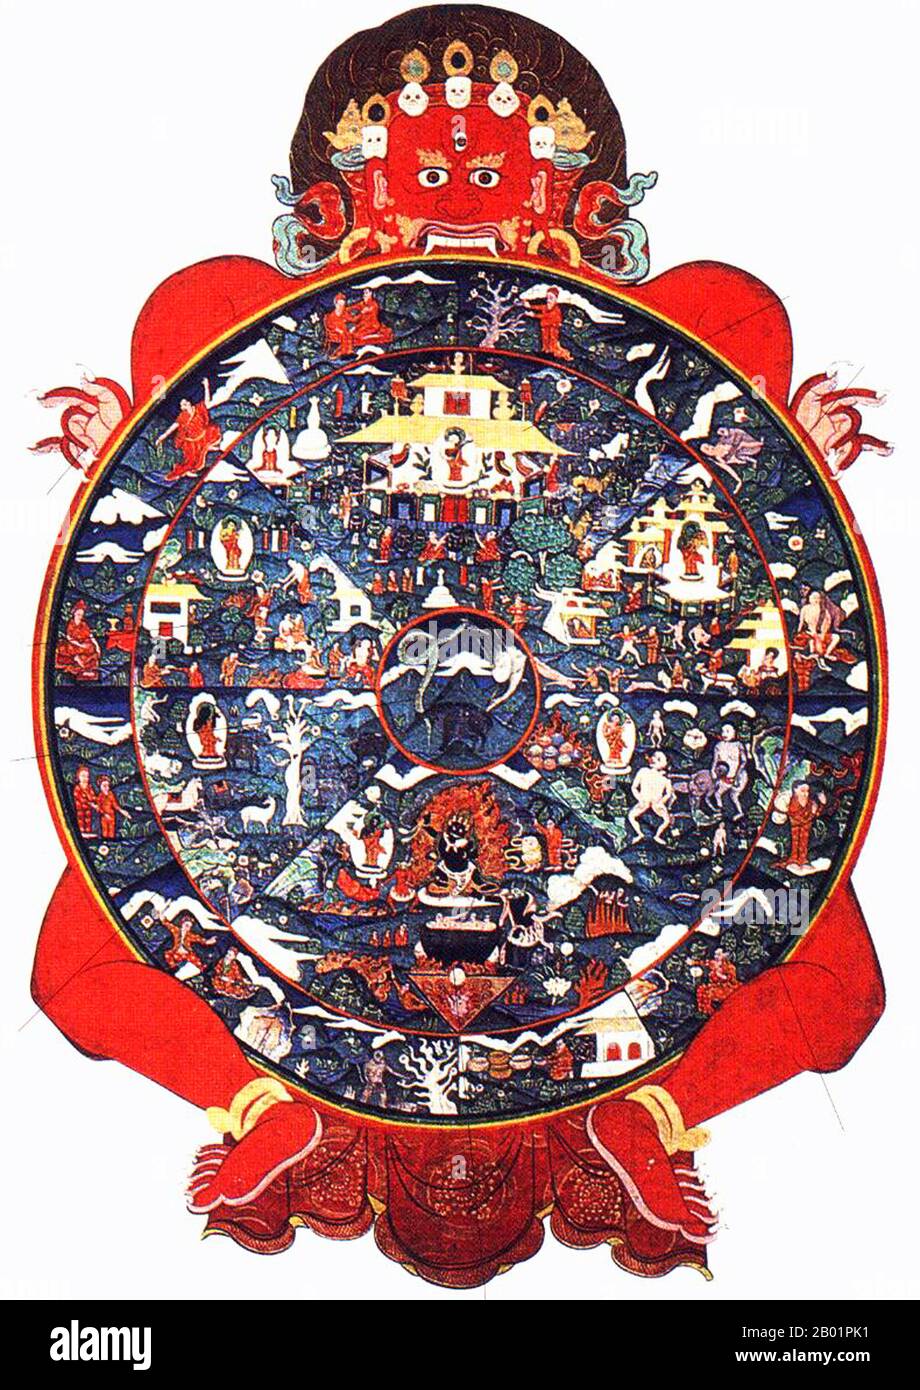 Tibet: Traditioneller buddhistischer Thangka, der das Rad des Lebens mit seinen sechs Reichen darstellt, um das 19. Jahrhundert. Das Bhavacakra (Sanskrit; Devanagari: भवचक्र; Pali: Bhavacakka) oder „Rad des Werdens“ ist eine symbolische Darstellung der kontinuierlichen Existenz in Form eines Kreises, der hauptsächlich im tibetischen Buddhismus verwendet wird. Stockfoto